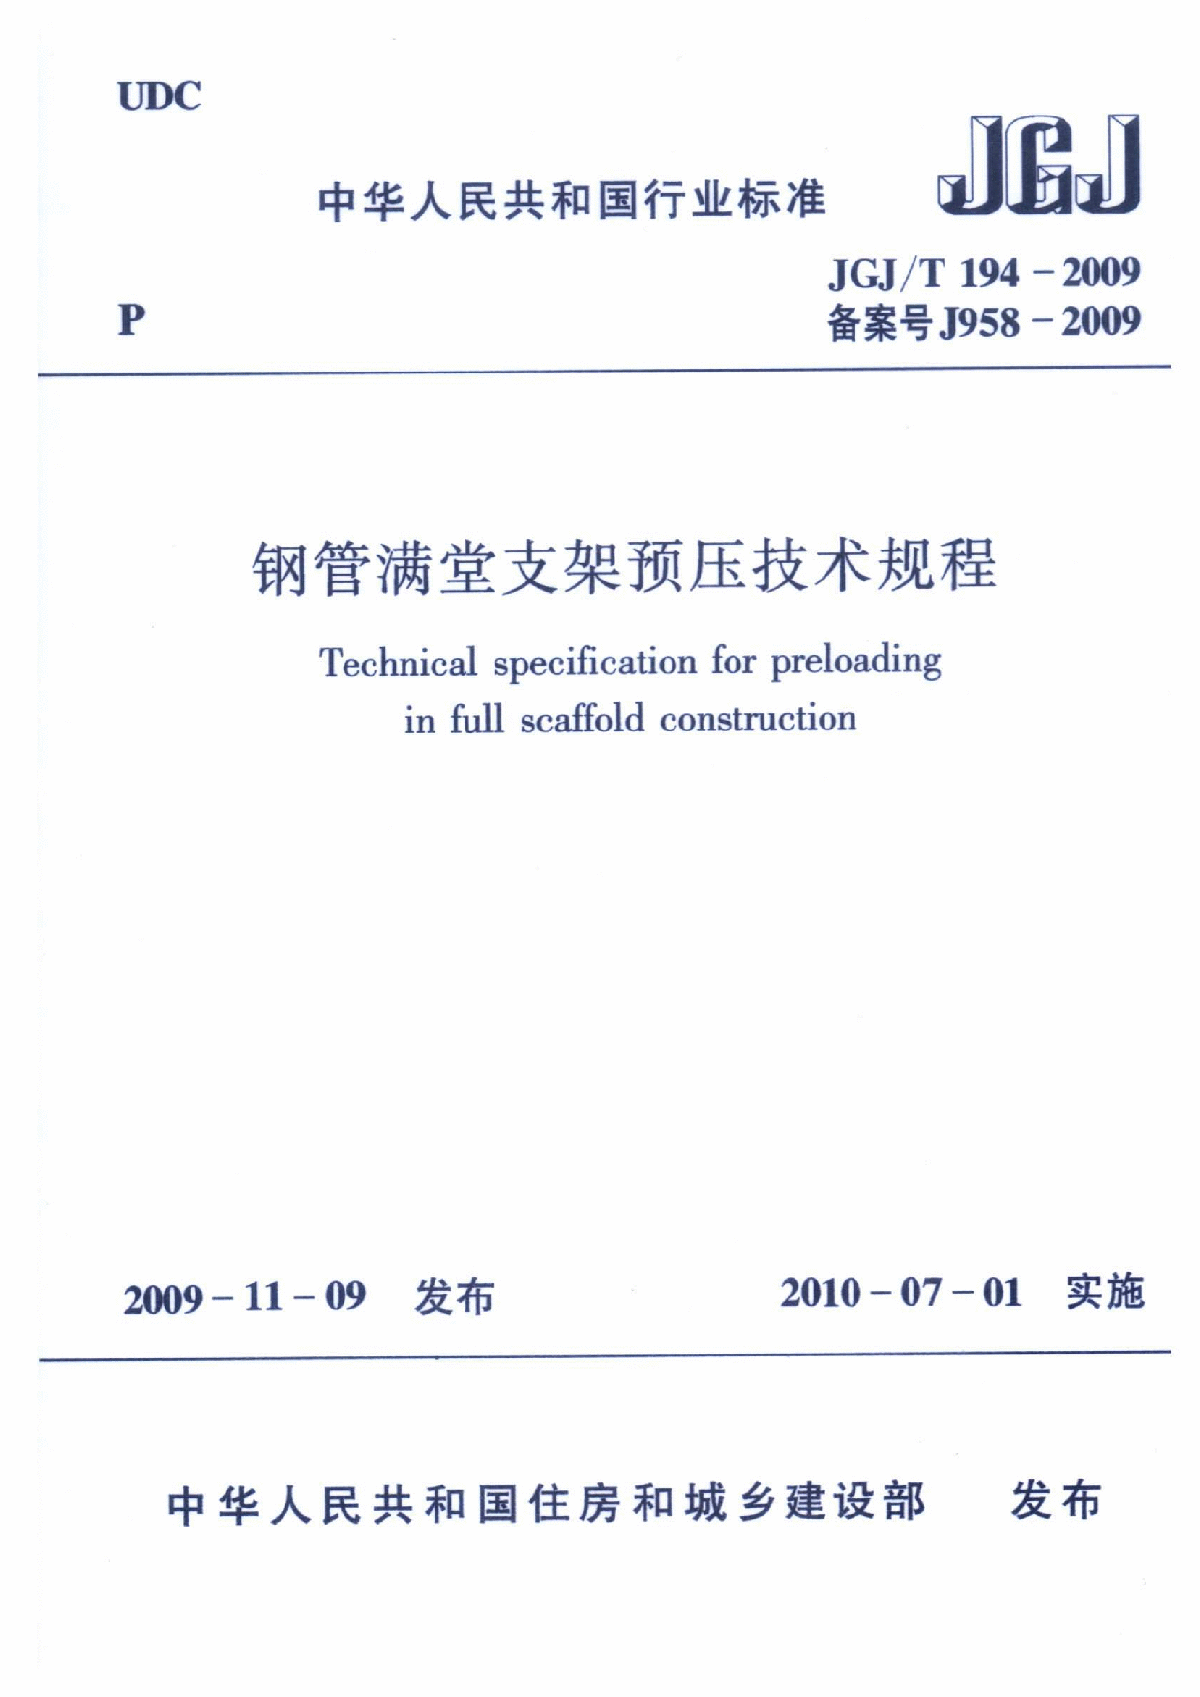 JGJ∕T 194-2009 钢管满堂支架预压技术规程